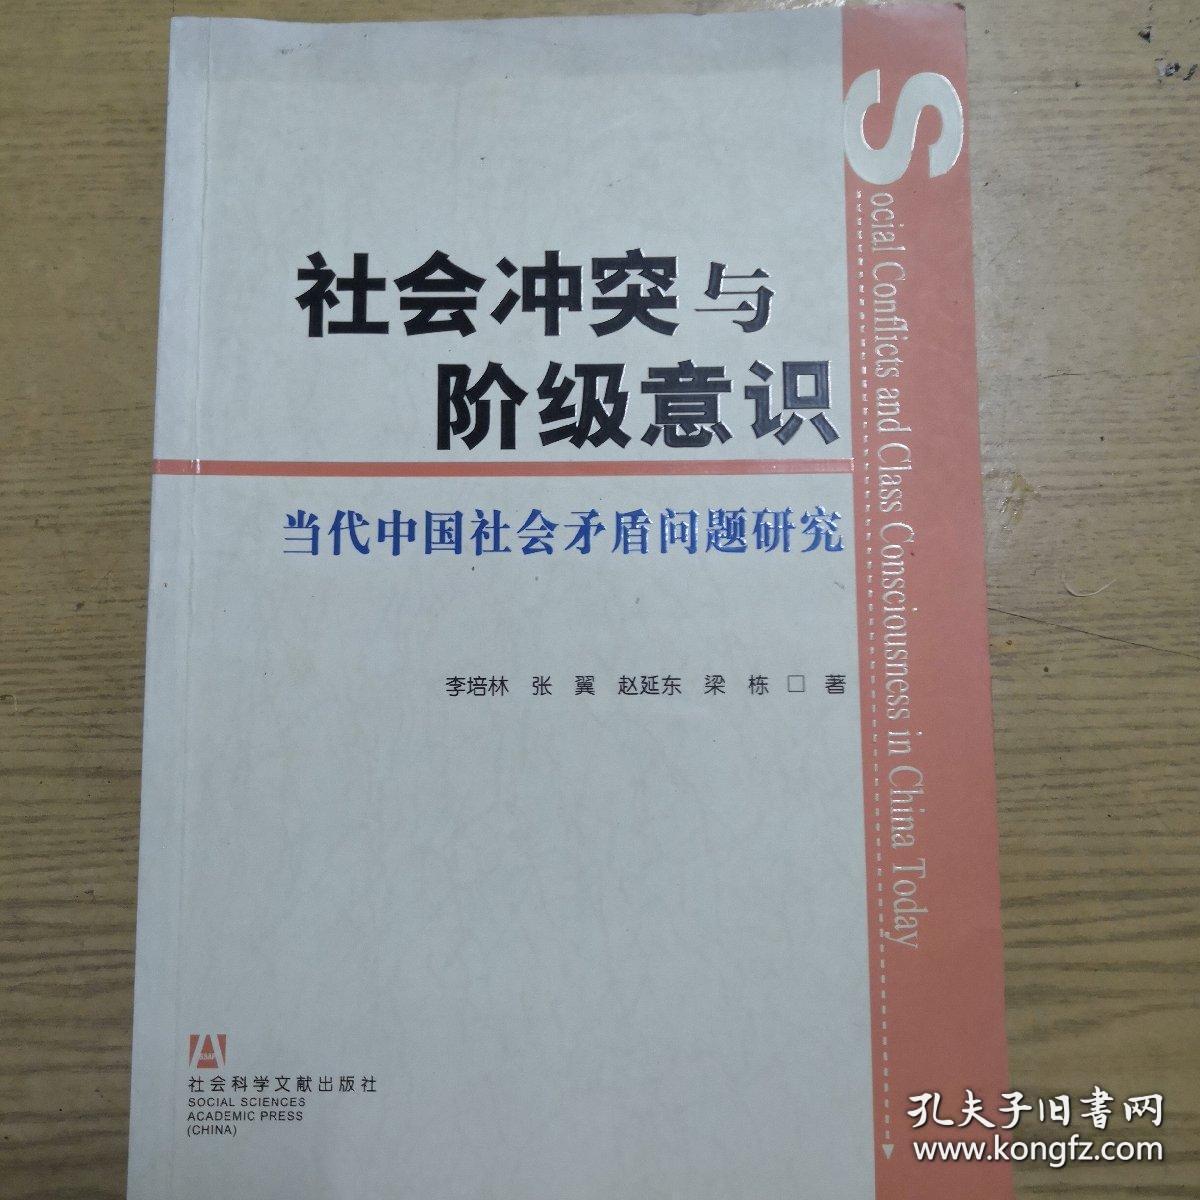 社会冲突与阶级意识:当代中国社会矛盾问题研究.